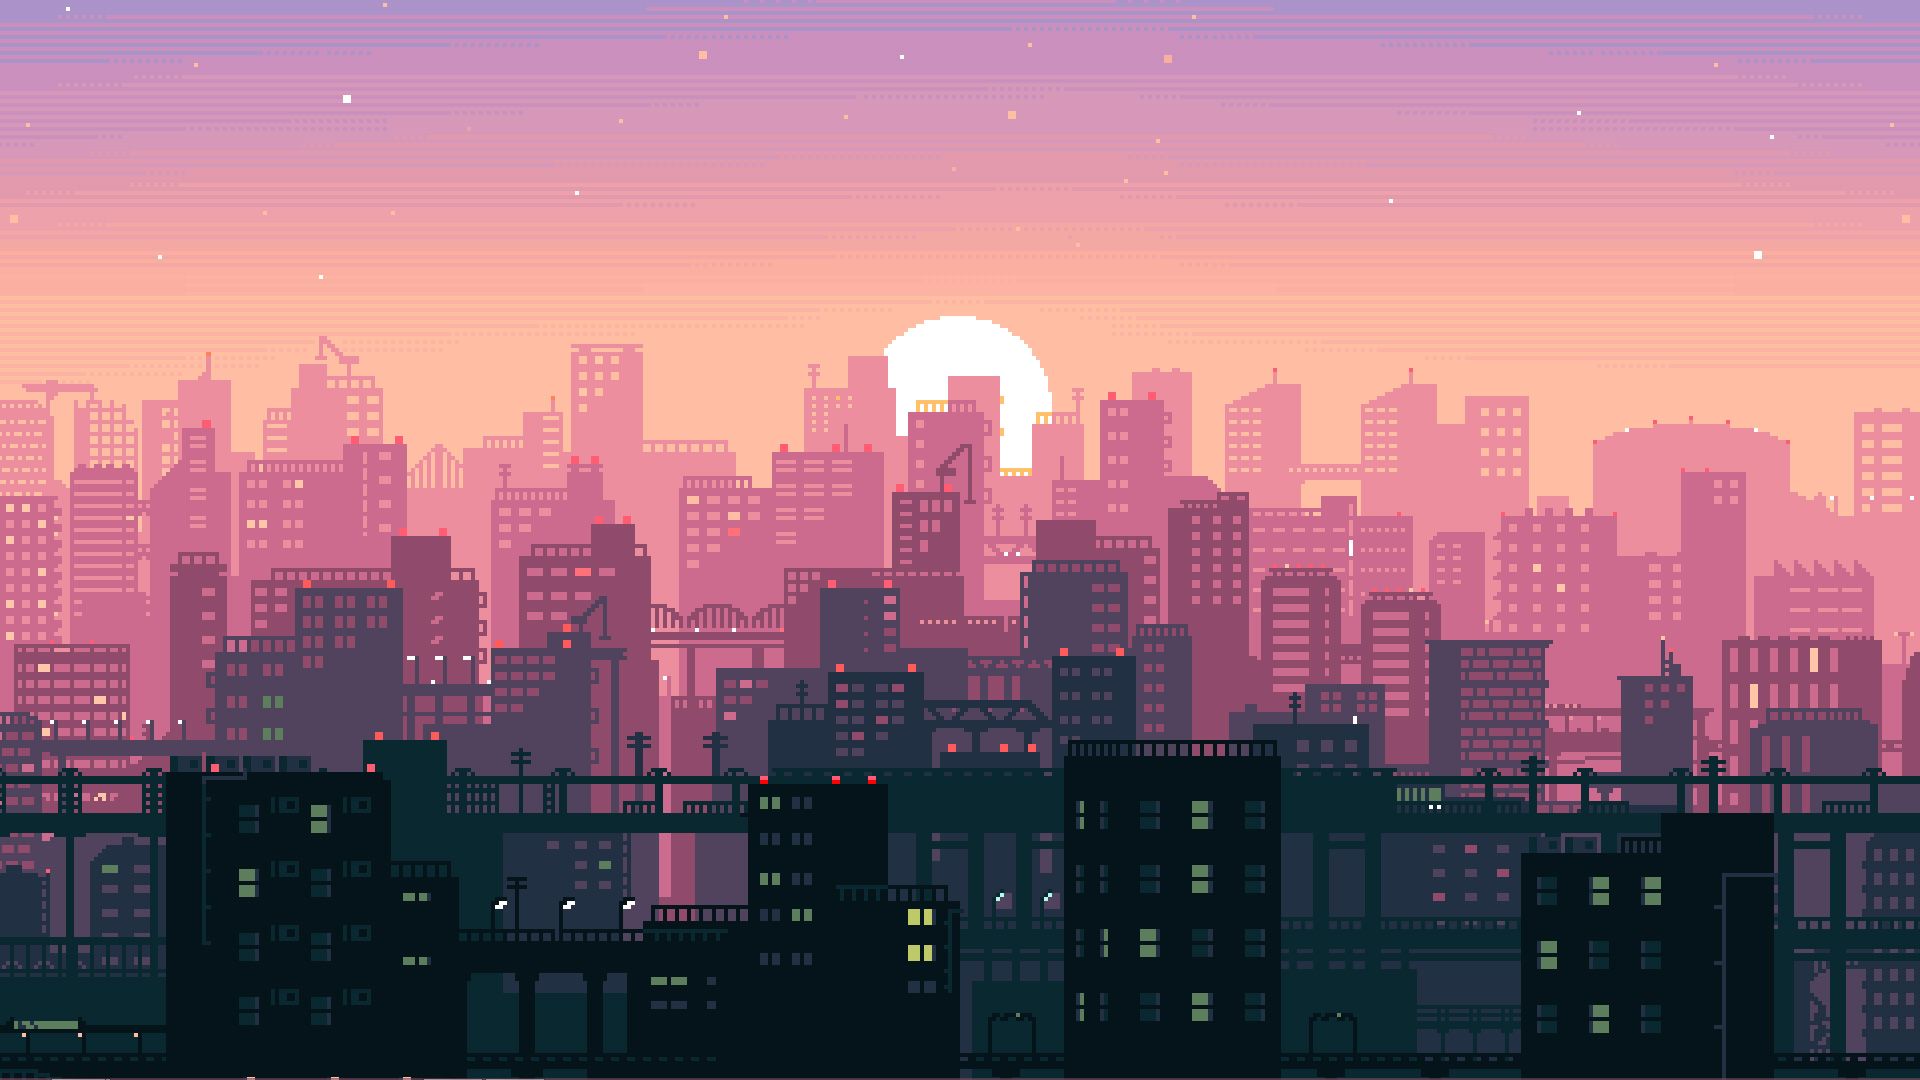 City Pixel Art Wallpapers   Top Free City Pixel Art Backgrounds